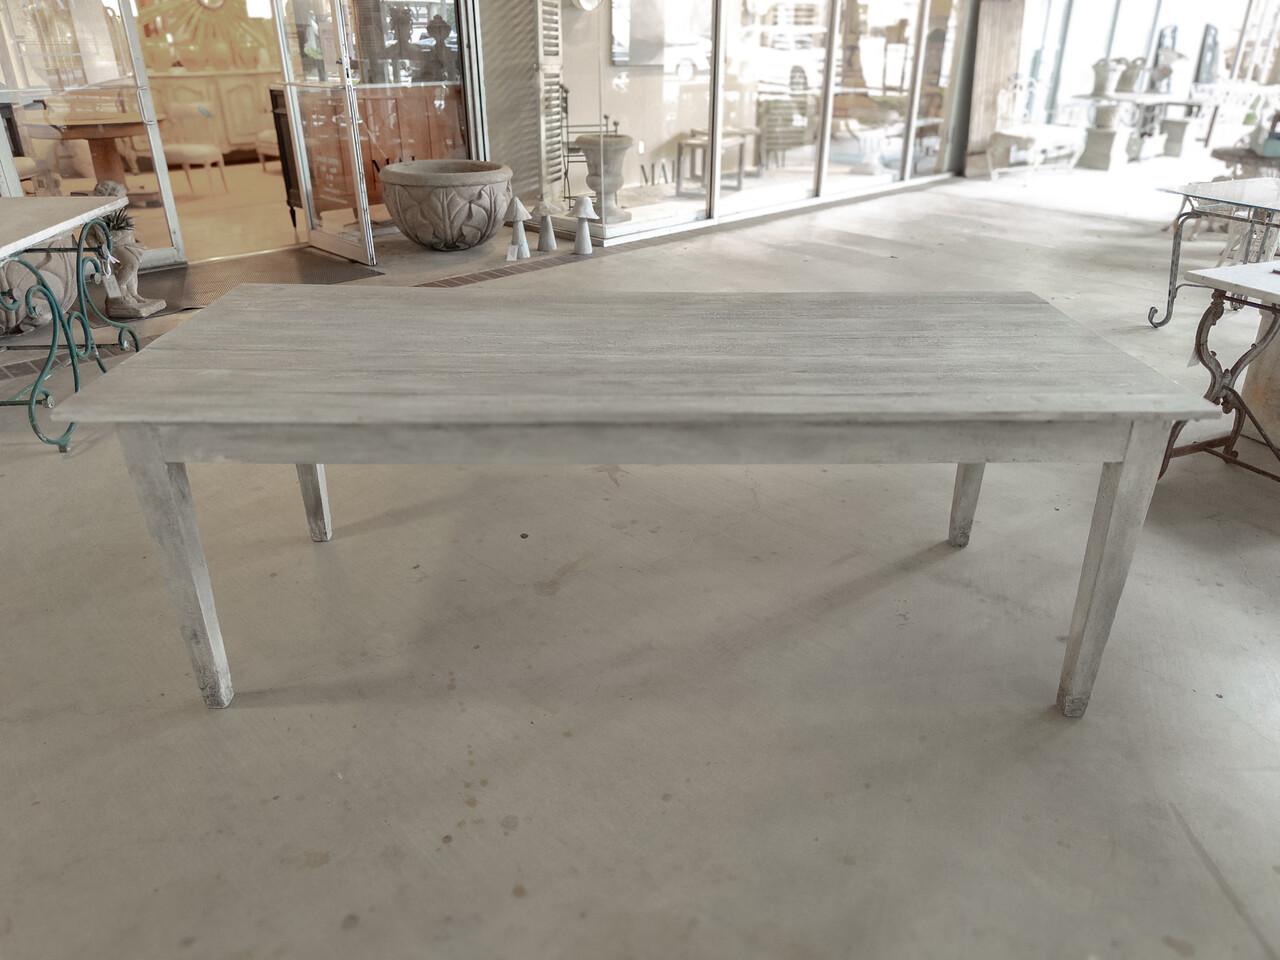 La table de ferme Plank Top, fabriquée sur mesure, est un chef-d'œuvre rustique qui allie fonctionnalité et savoir-faire artisanal. Son design dégage un charme chaleureux et accueillant qui rappelle la simplicité et le confort de la vie à la